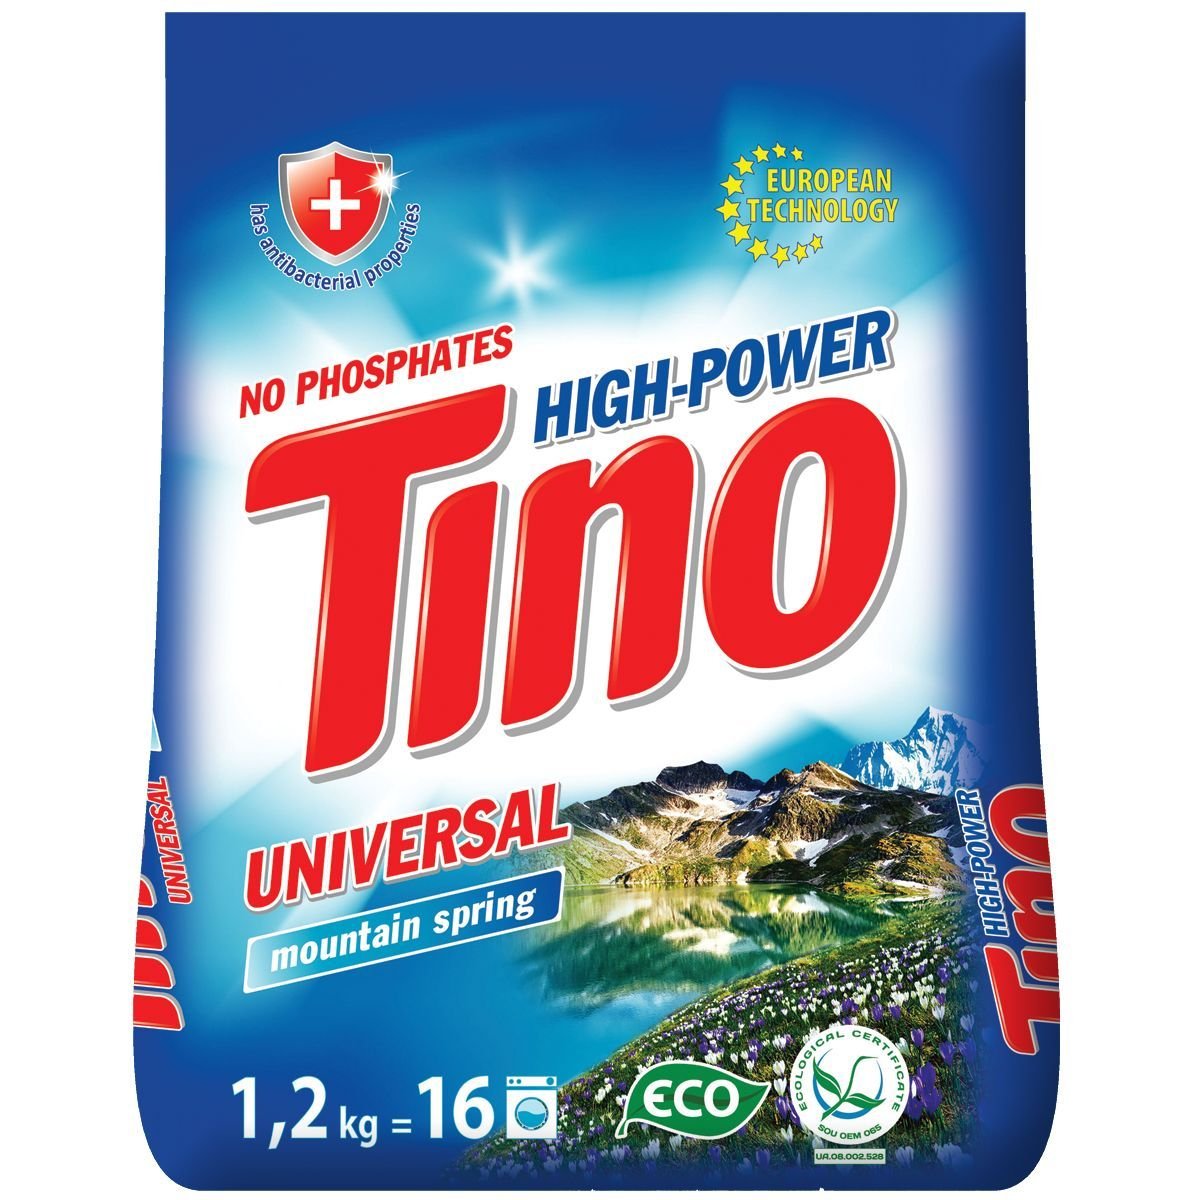 Фото - Стиральный порошок Порошок пральний Tino High-Power Universal Mountain spring, 1,2 кг